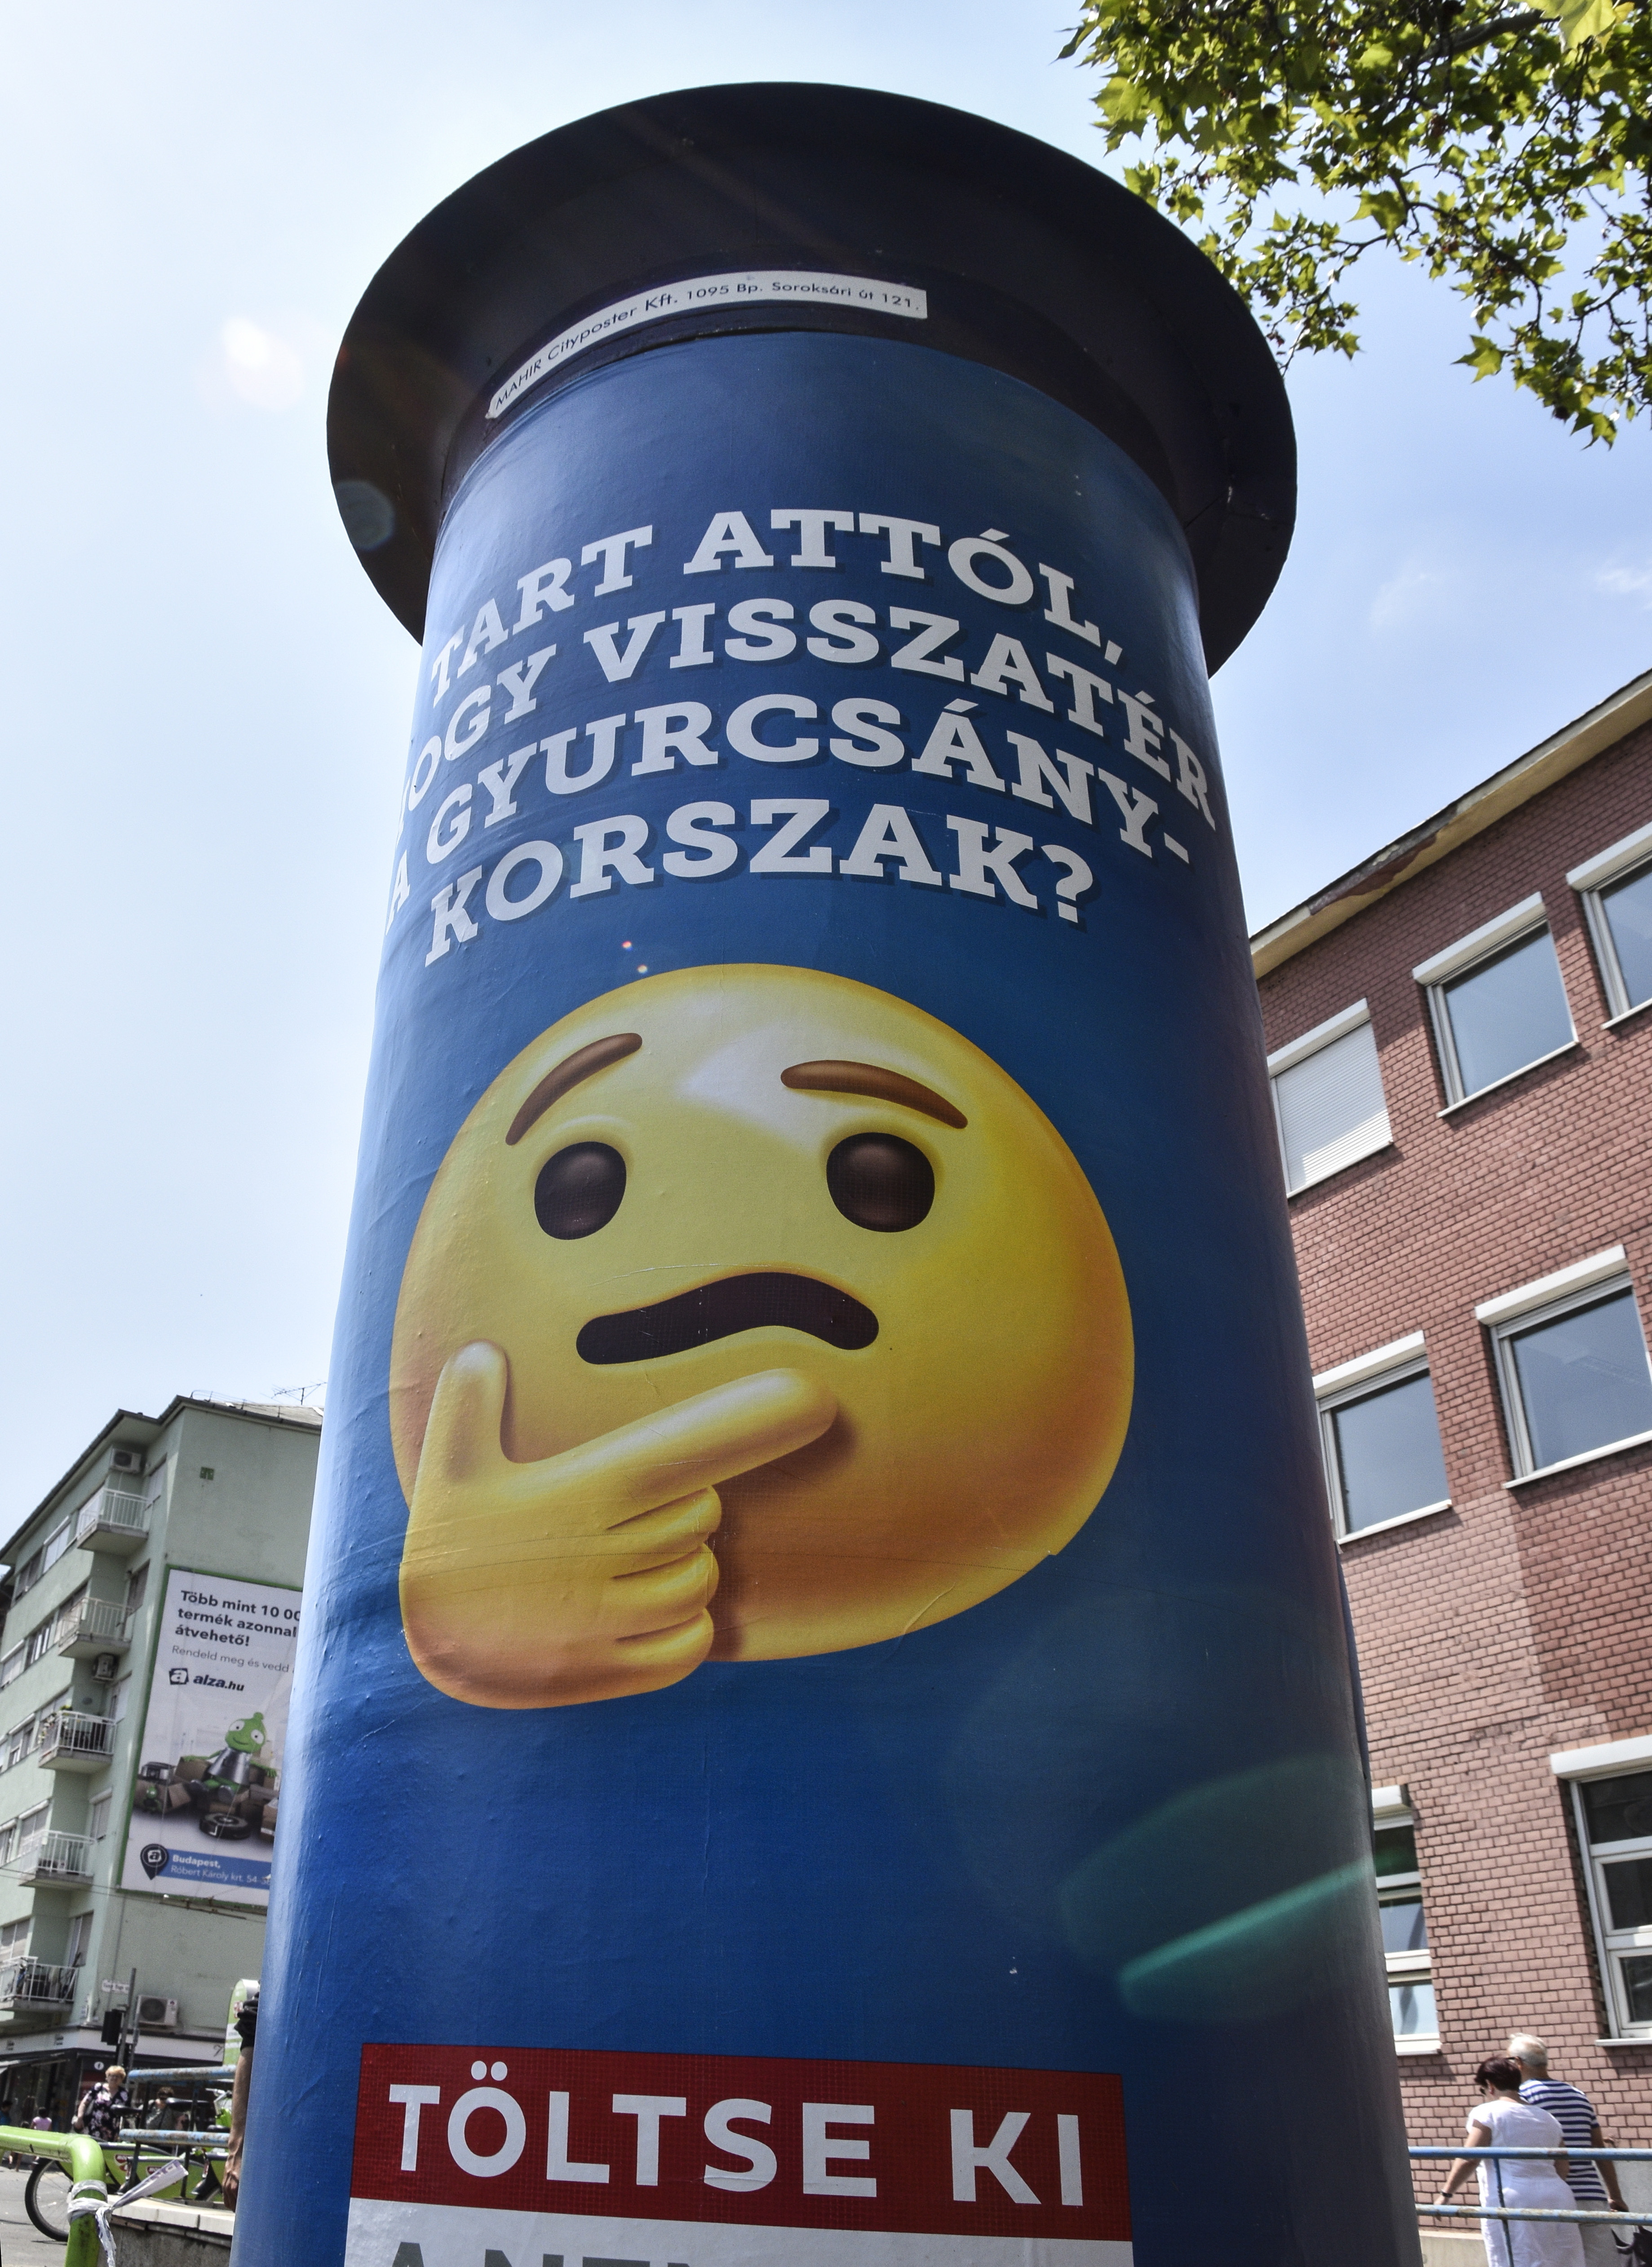 A rendőrség szerint nincs probléma az emojis plakátokkal